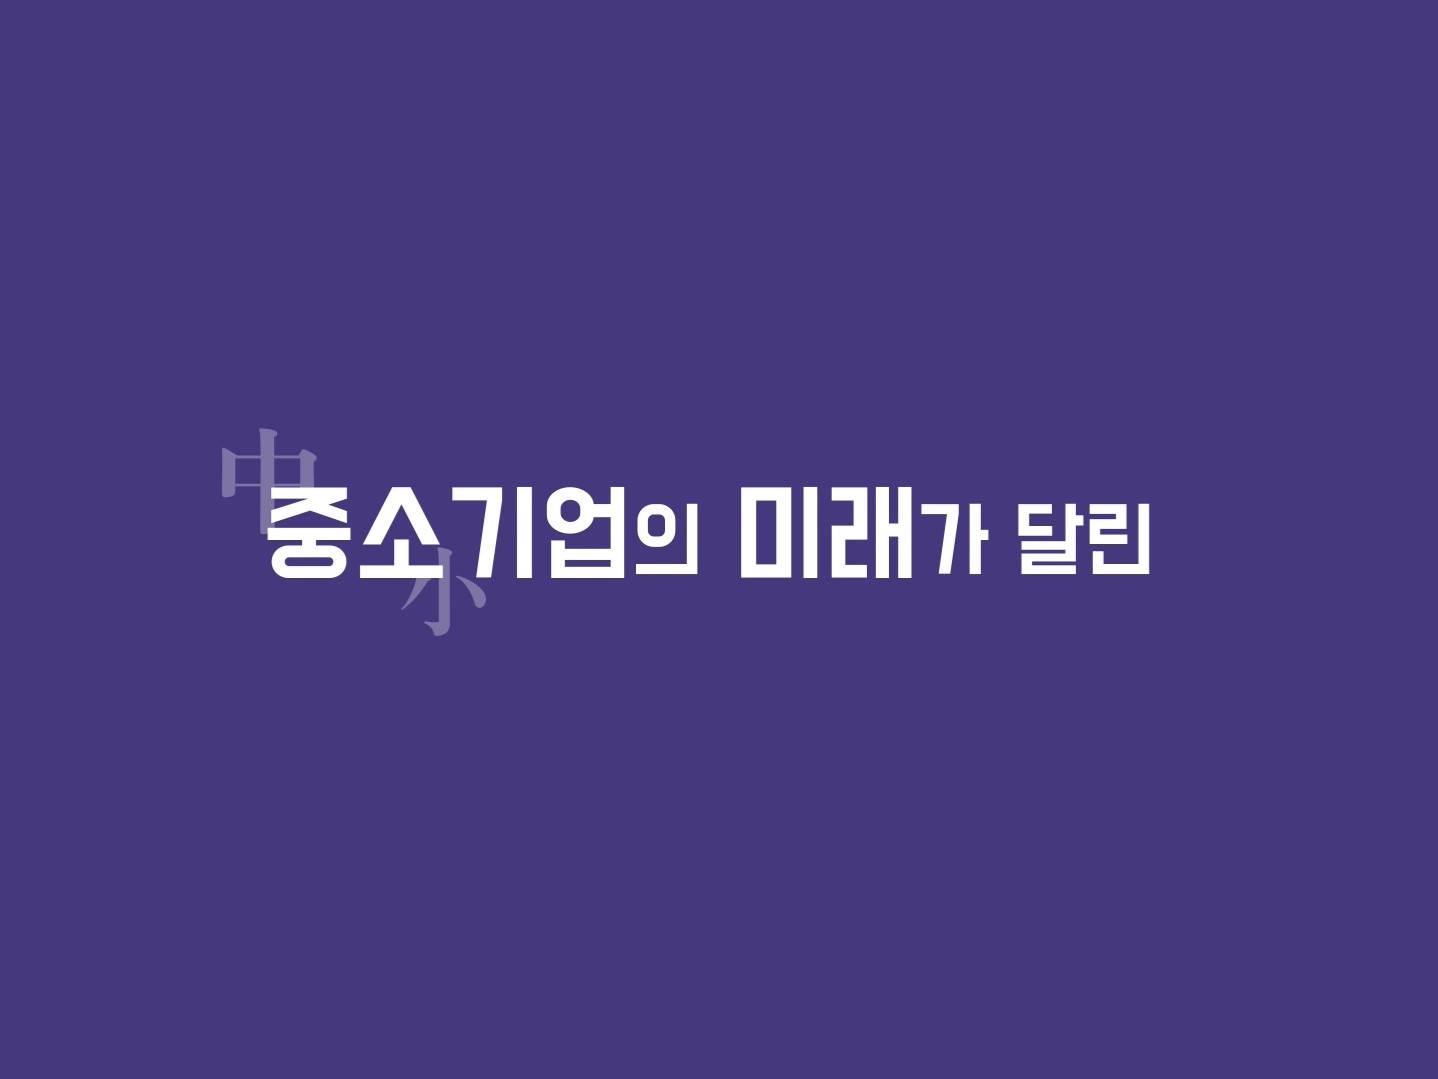 기정원 SRT 광고영상 (연구장비공동활용지원사업)